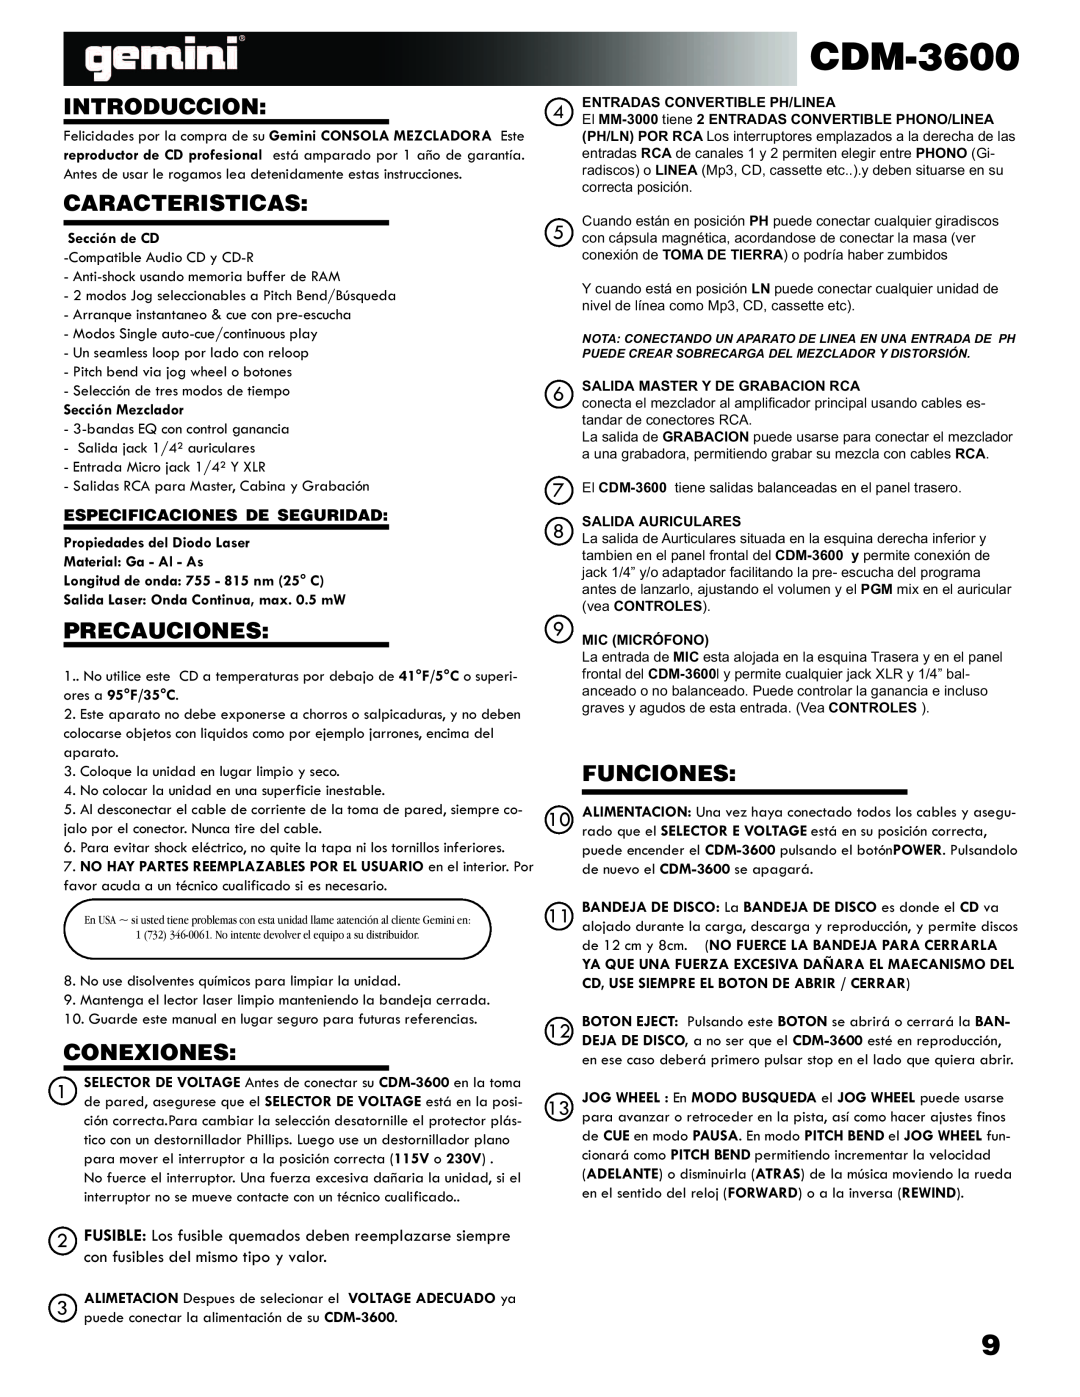 Gemini CDM-3600 manual Introduccion, Caracteristicas, Precauciones, Conexiones, Funciones, Especificaciones De Seguridad 